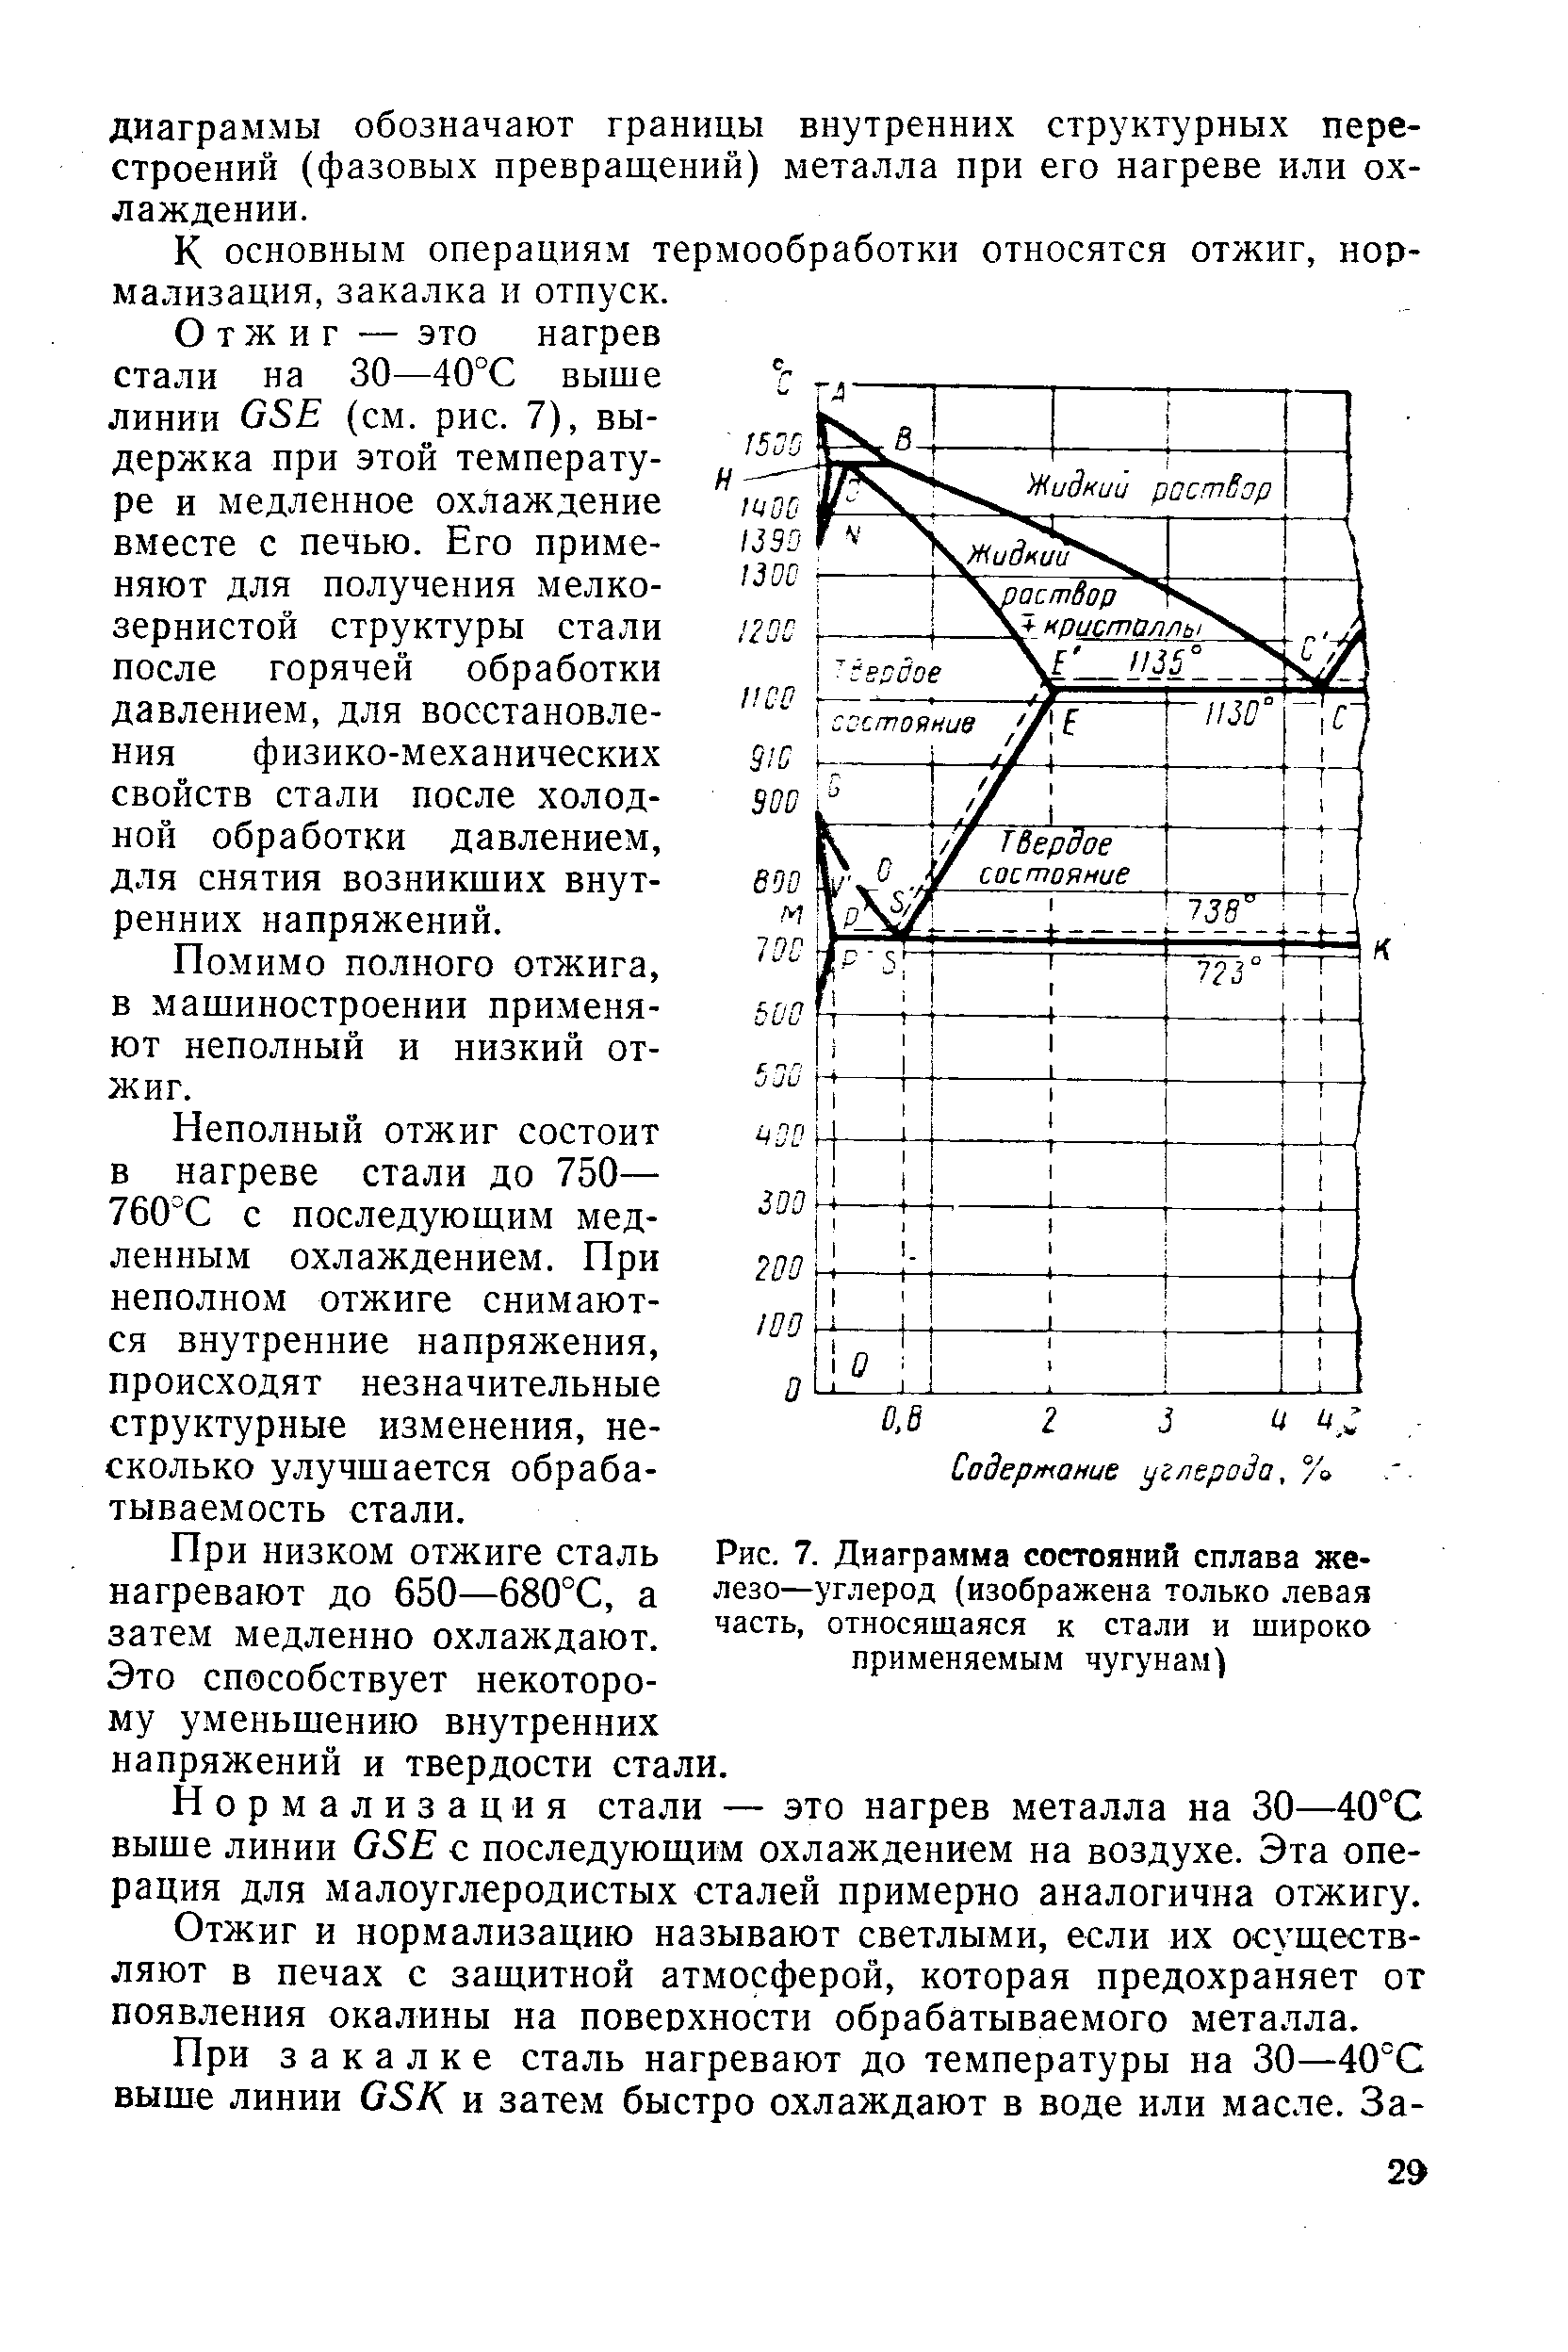 Рис. 7. Диаграмма состояний сплава железо-углерод (изображена только левая часть, относящаяся к стали и щироко применяемым чугунам)
